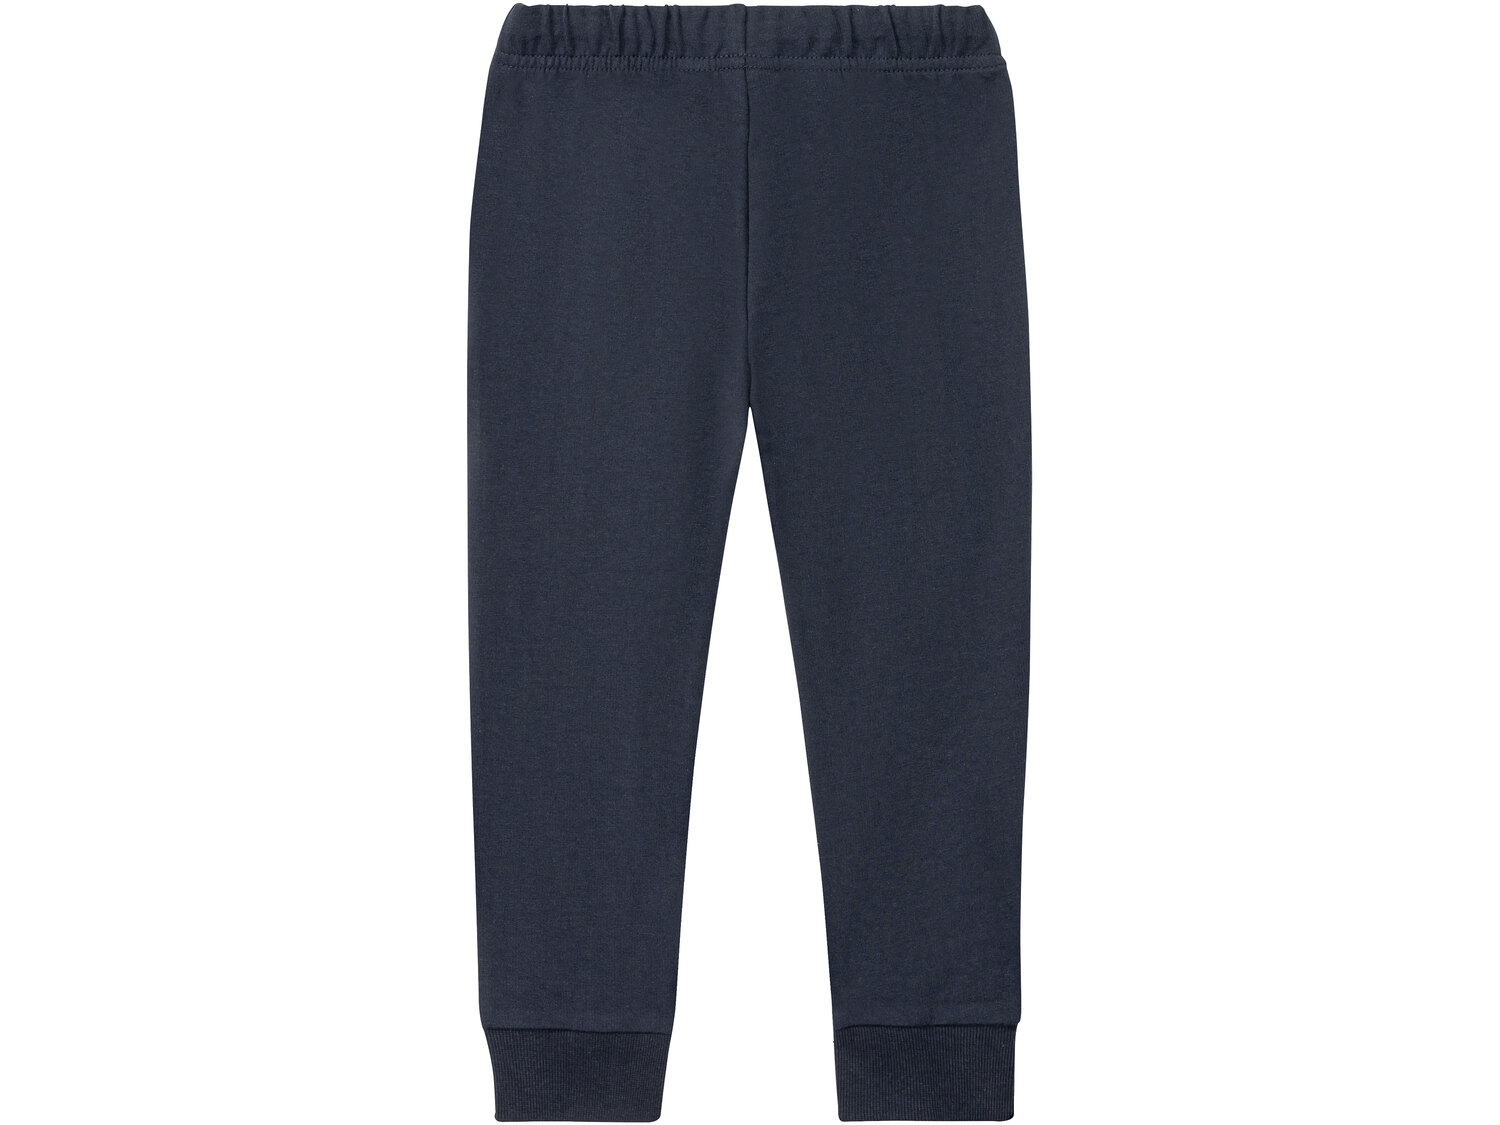 Spodnie dresowe dziecięce , cena 9,99 PLN 
- 60% bawełny, 40% poliestru
- rozmiary: ...